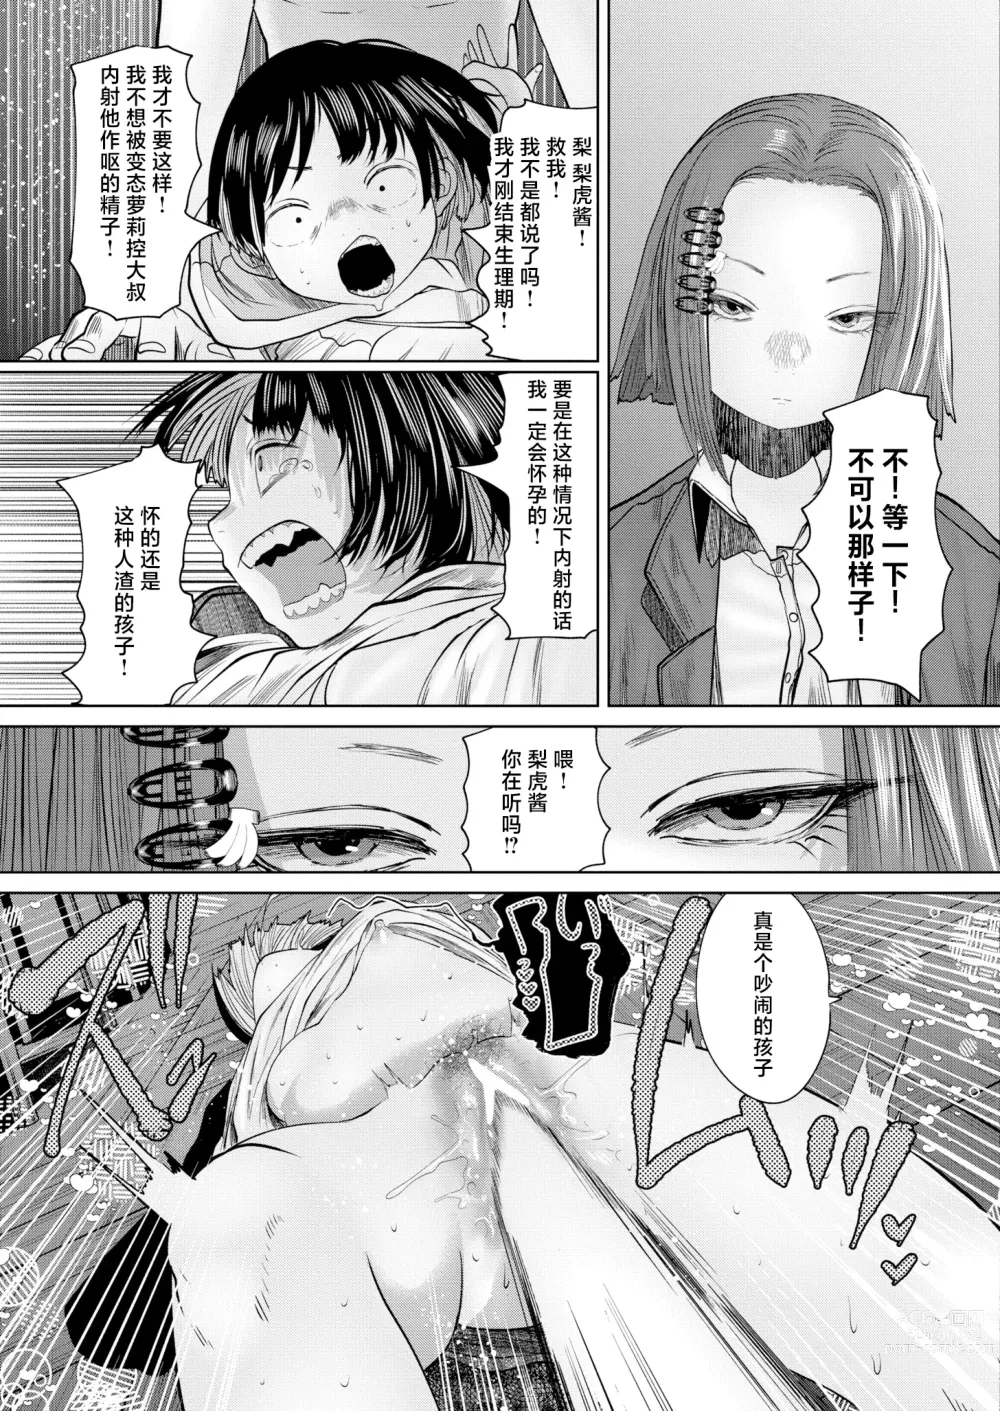 Page 143 of manga ねーうしとらうー! #1-5